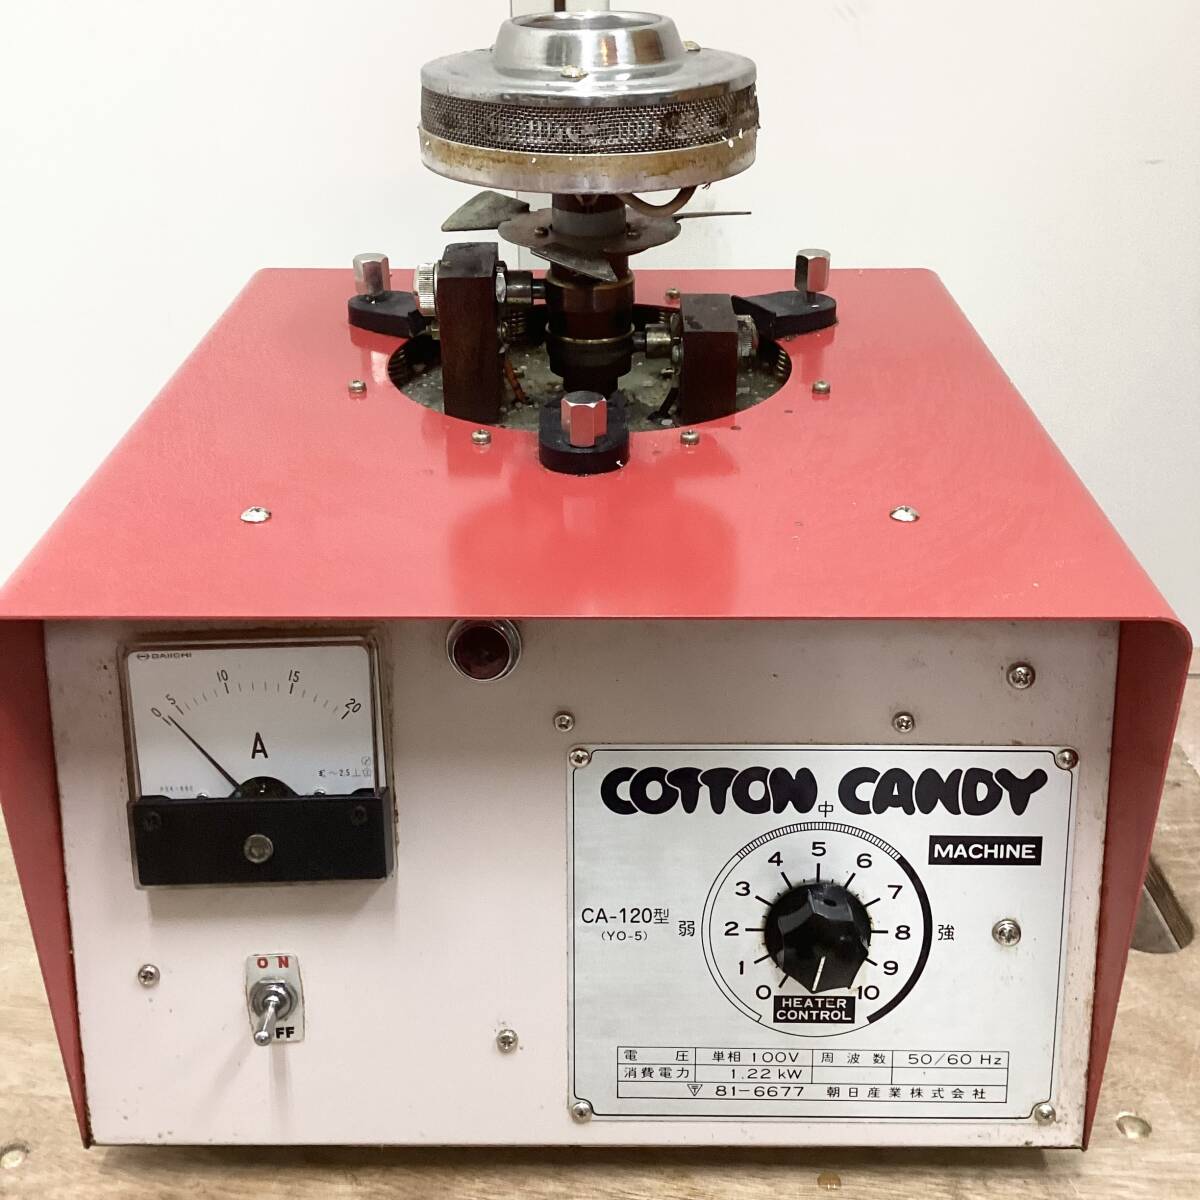  утро день промышленность хлопок сладости механизм машина для сладкой ваты CA-120 YO-05 type рабочее состояние подтверждено работа товар повреждение есть самовывоз возможно COTTON CANDY MACHINE (E1289)